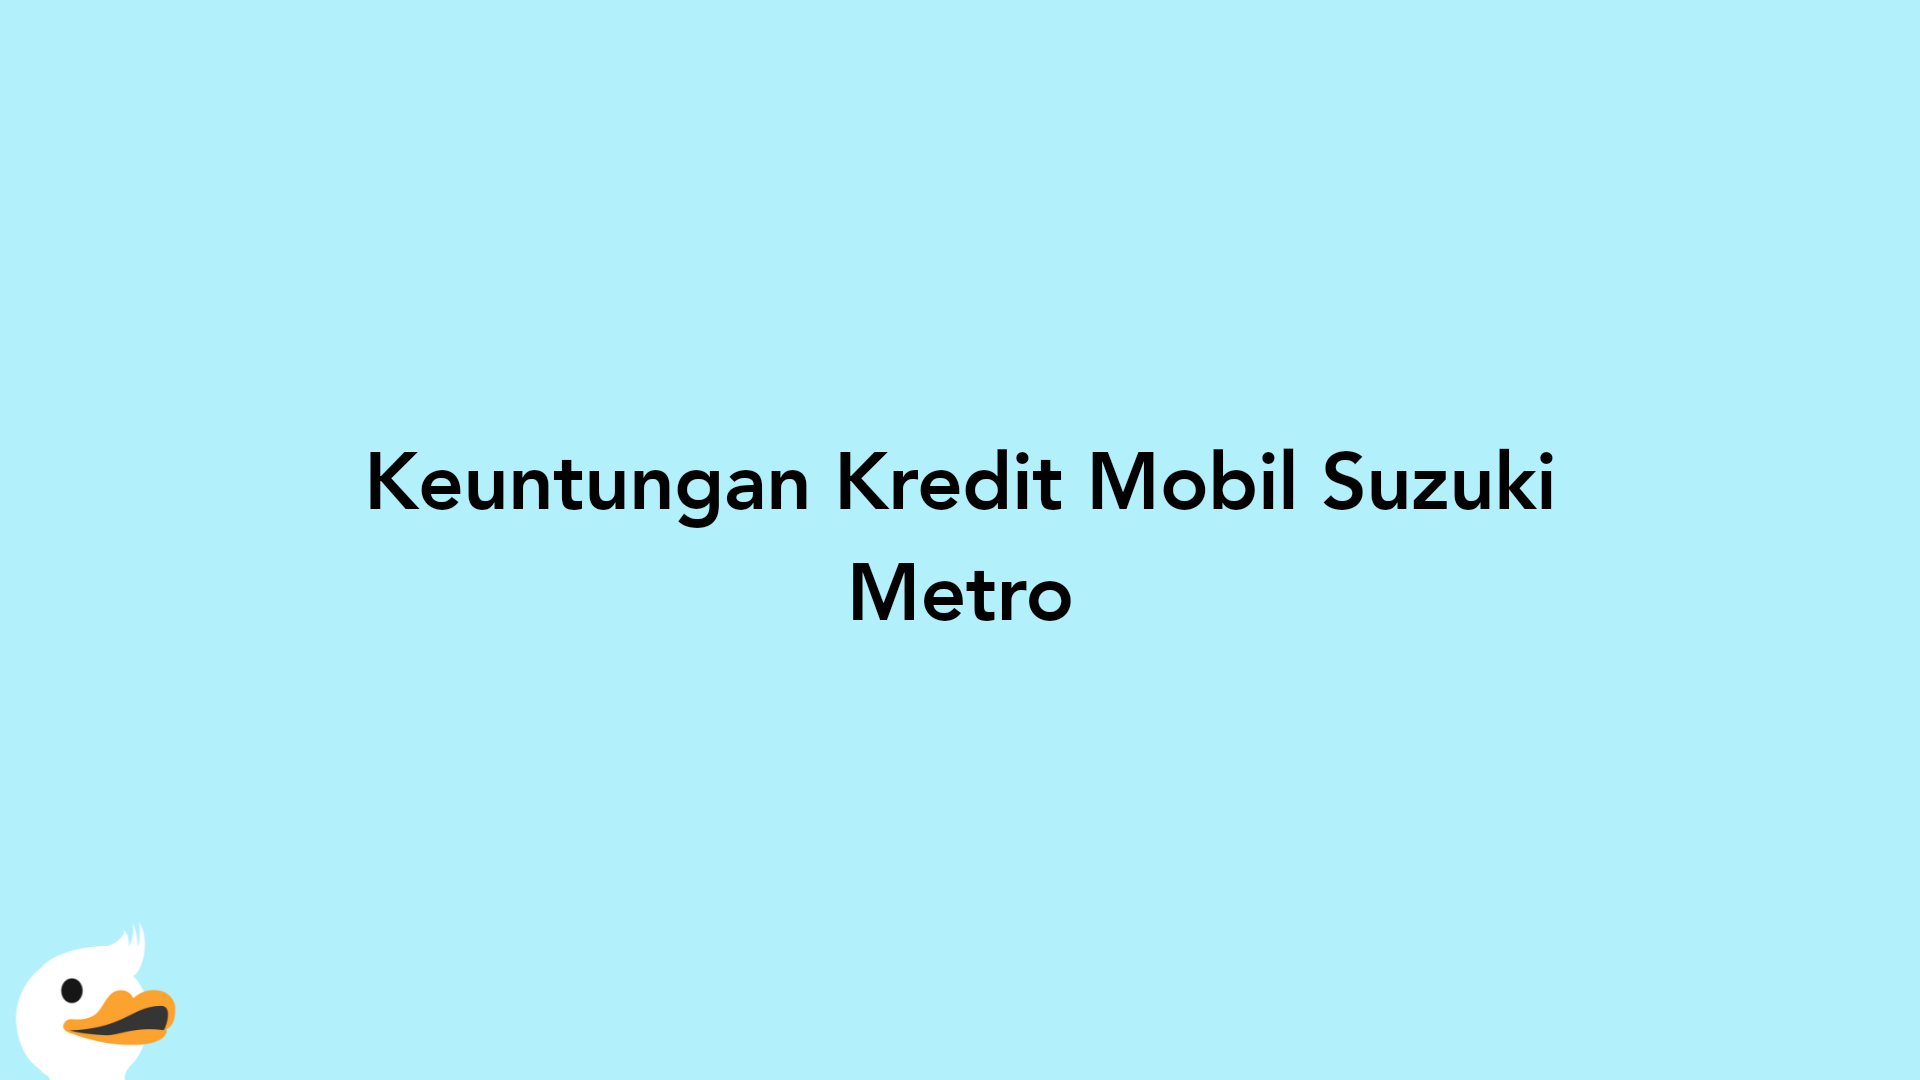 Keuntungan Kredit Mobil Suzuki Metro